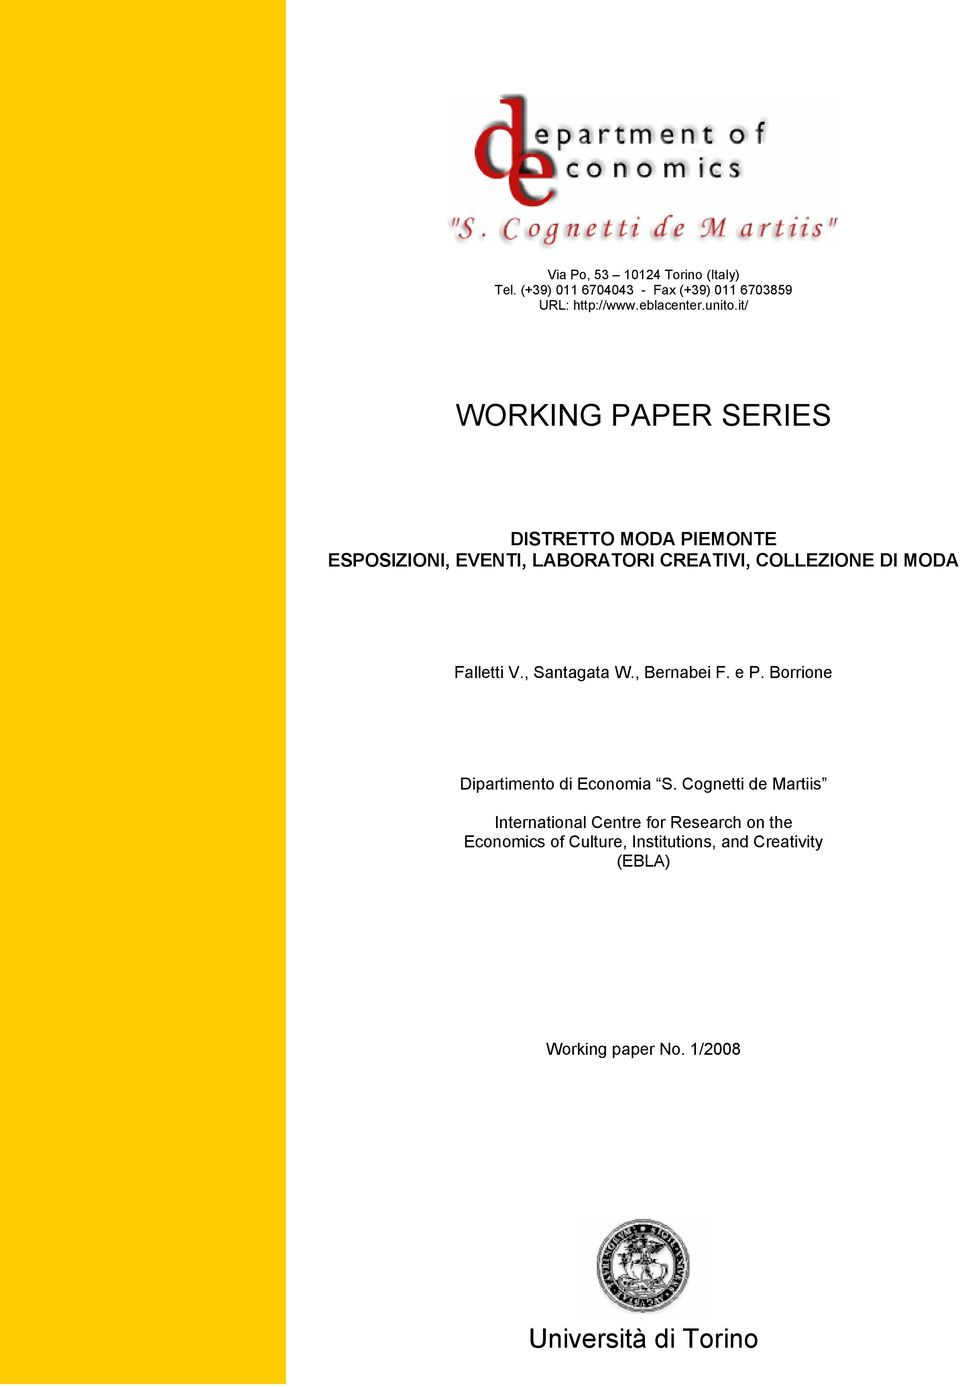 Falletti V., Santagata W., Bernabei F. e P. Borrione Dipartimento di Economia S.